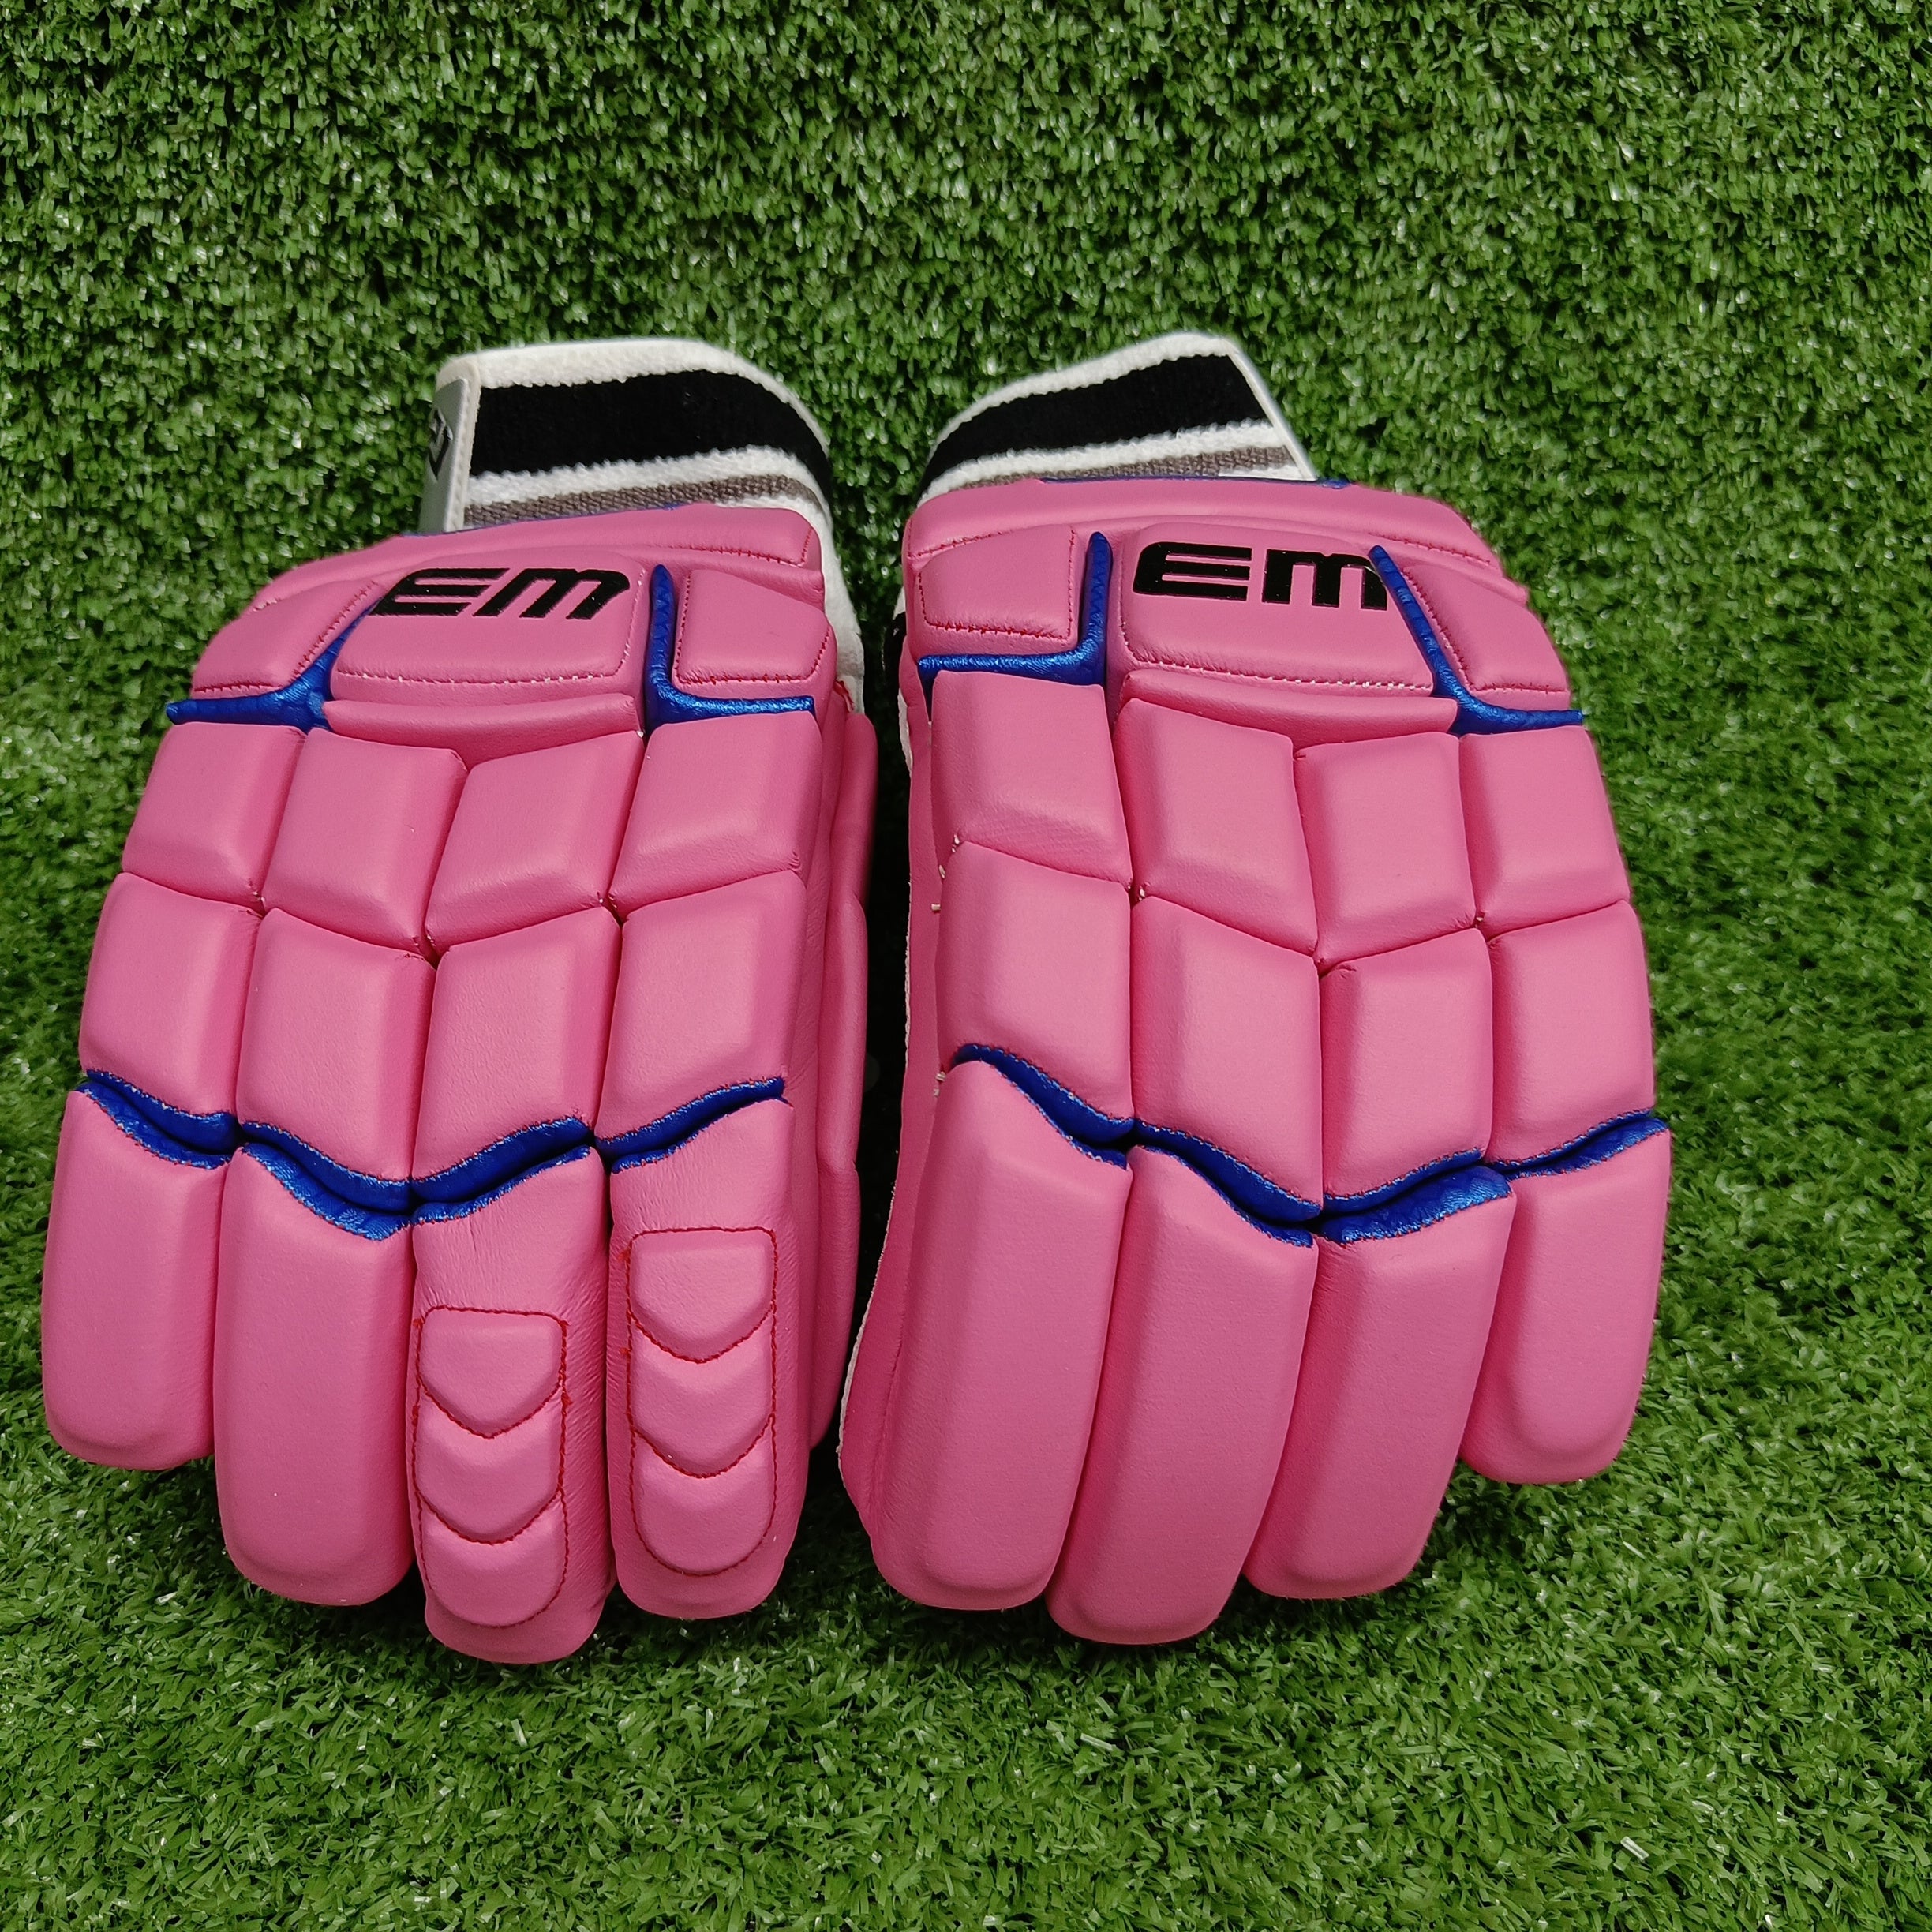 EM GT 1.0 Pink Junior / Youth Cricket Batting Gloves